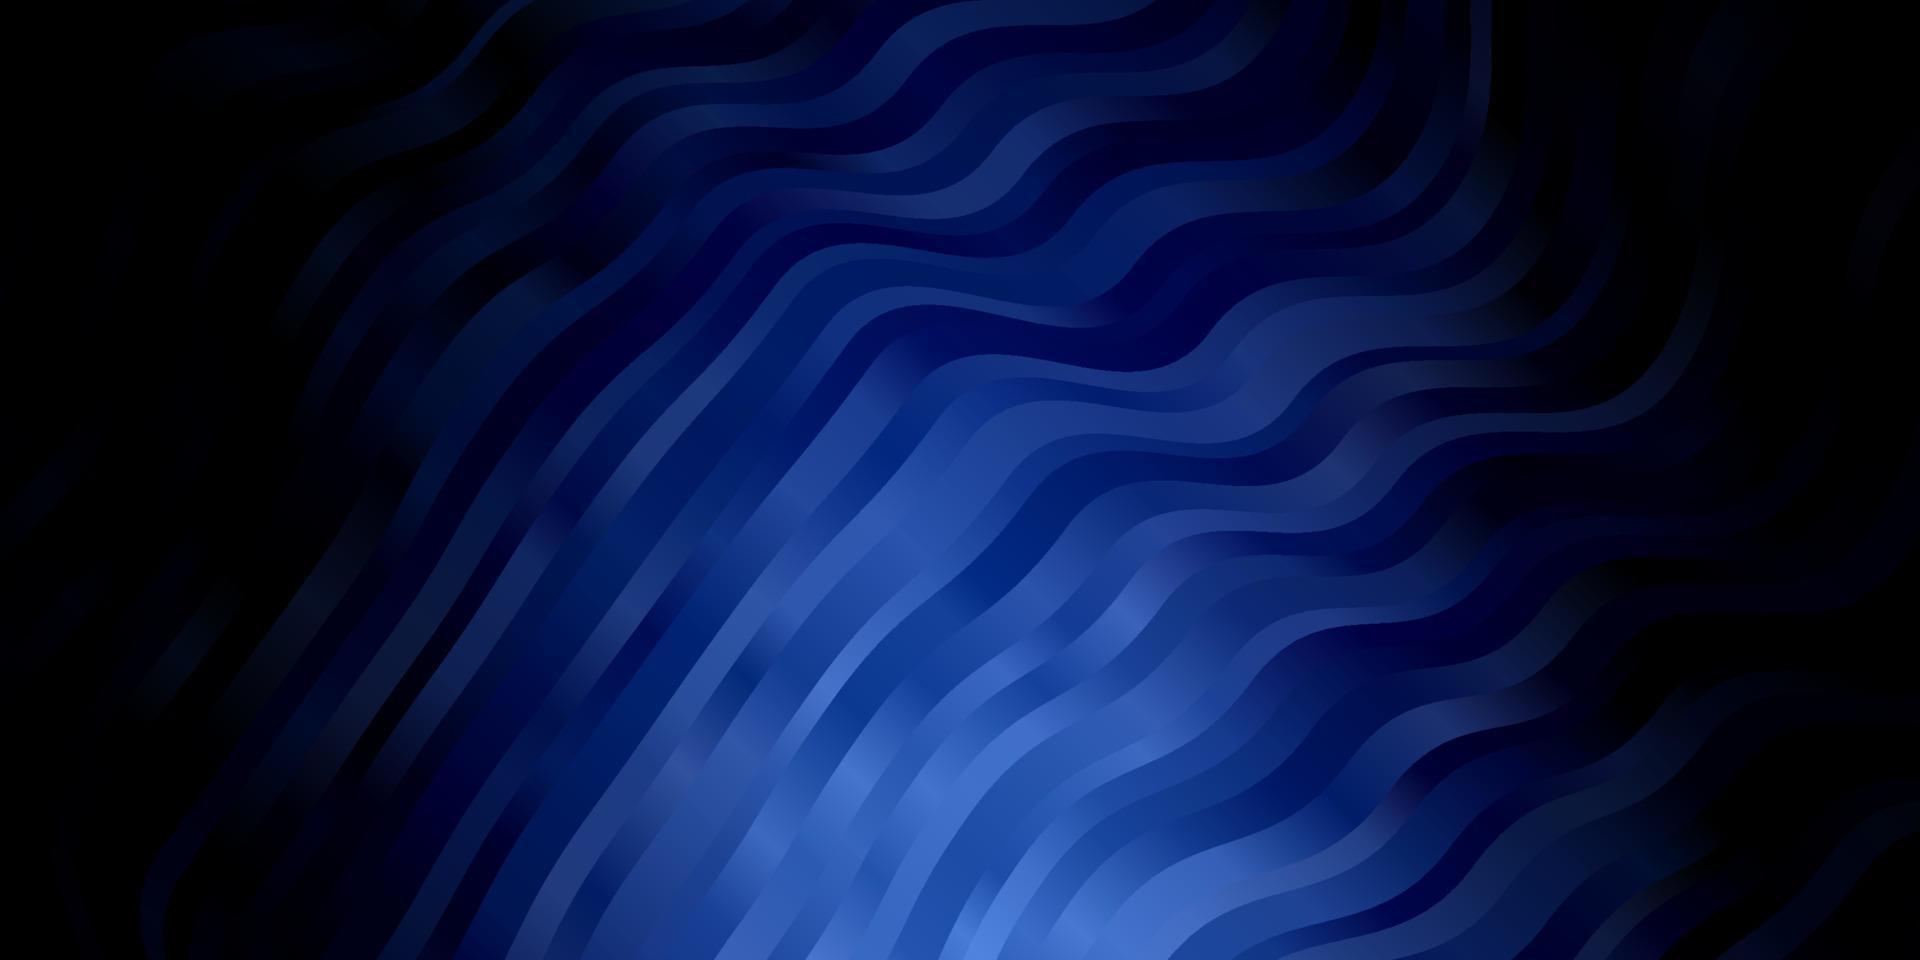 plantilla de vector azul claro con líneas curvas.